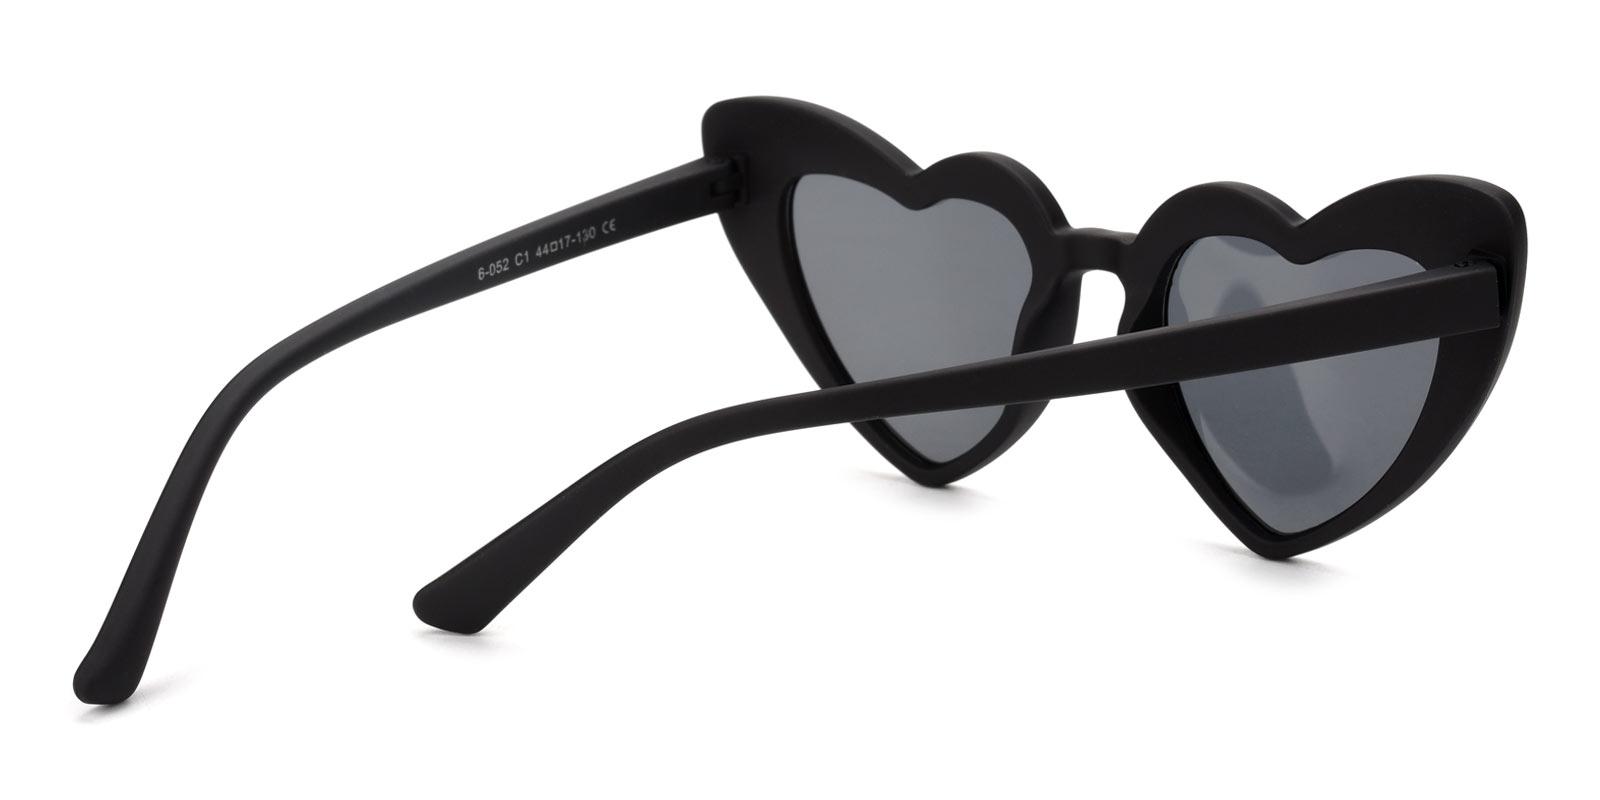 Retta Non Prescription Sunglasses-Black-Geometric-TR-Sunglasses-detail